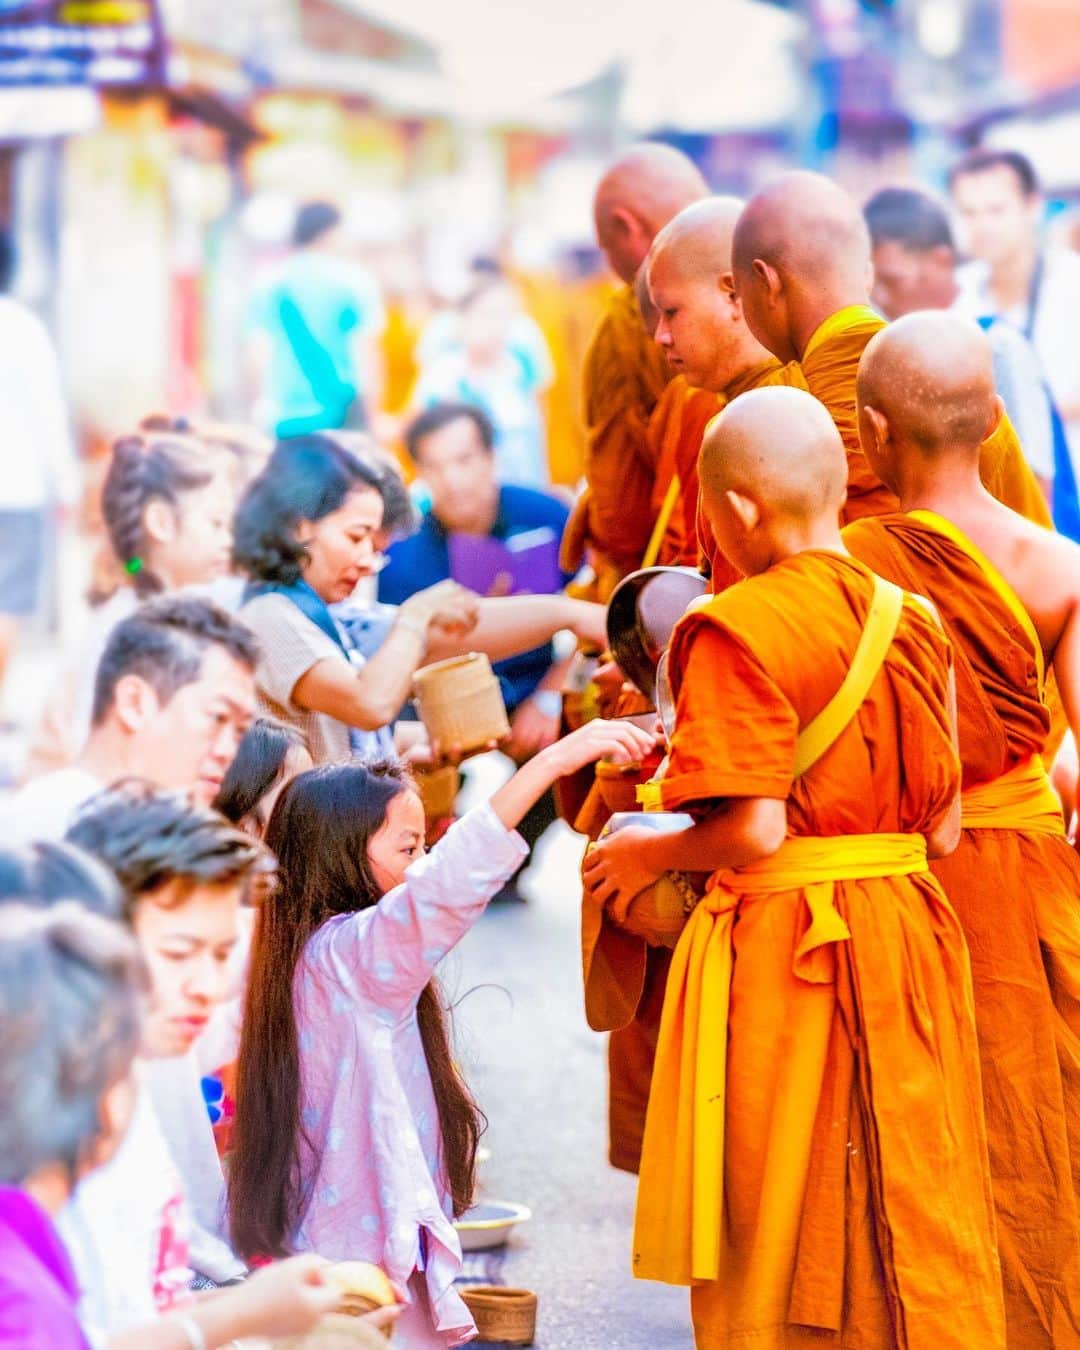 タイ国政府観光庁のインスタグラム：「. ༉‧₊˚ 🇹🇭わざわざ行きタイ旅！ ⠀ ⋯⋯⋯⋯⋯⋯⋯⋯⋯⋯⋯⋯✈  毎週土曜日は、まだあまり知られていないタイのスポットをご紹介♪   今回はチェンカーンでの「タンブン」体験へ✨  北イサーンのルーイ県北方に位置する、チェンカーン。 メコン川沿いの小さなこの町でも見られるのが、「托鉢」です🙏  毎朝６時過ぎになると、メインストリートを僧侶たちが列をなして歩きます💨 地元の人々は竹籠にもち米を用意し、これを僧侶に「タンブン」＝「徳を積む行為」するのが伝統的な習わしです🕊  この「タンブン」は、ツーリストも体験可能🙆‍♀️ 年長者を敬い、仏教の教えを守る――タイに根付く文化に触れながら、この土地ならではの風習を体験してみてはいかがでしょう？☺️  ☆「行ってみたい！」：いいね❤をタップ ★「参考になった！」：保存ボタン🔖をタップ  #タイ #ルーイ #チェンカーン  #托鉢 #托鉢風景 #タンブン #タイ寺院 #お寺巡り #秘境 #ローカル体験 #チェンカーンウォーキングストリート  #こんなタイ知らなかった #もっと知りタイ  #タイ旅行 #旅好きな人と繋がりたい #旅行好きな人と繋がりたい #海外旅行 #thailand #loei #loeitrip #chiangkhan #chiangkhantrip #isan #thainess #amazingthailand #thailandtravel #thailandtrip #thaistagram #lovethailand #amazingnewchapters」